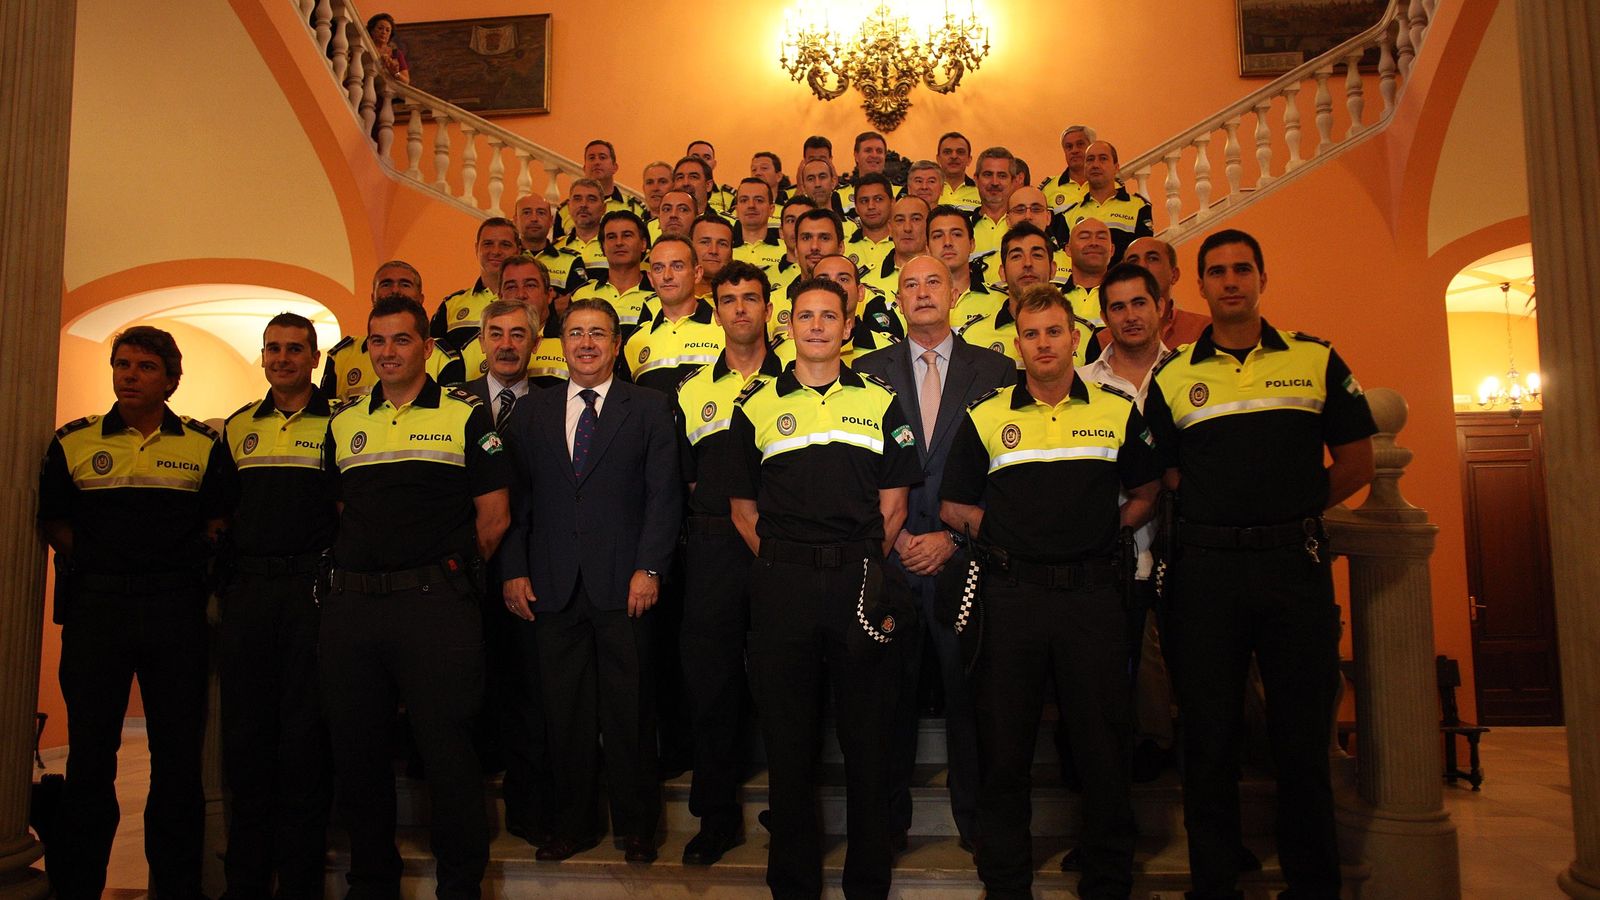 Foto: El exalcalde de Sevilla Juan Ignacio Zoido, tras la toma de posesión de 24 nuevos oficiales de Policía Local en 2011. Foto: Fernando Ruso / Ayuntamiento de Sevilla.